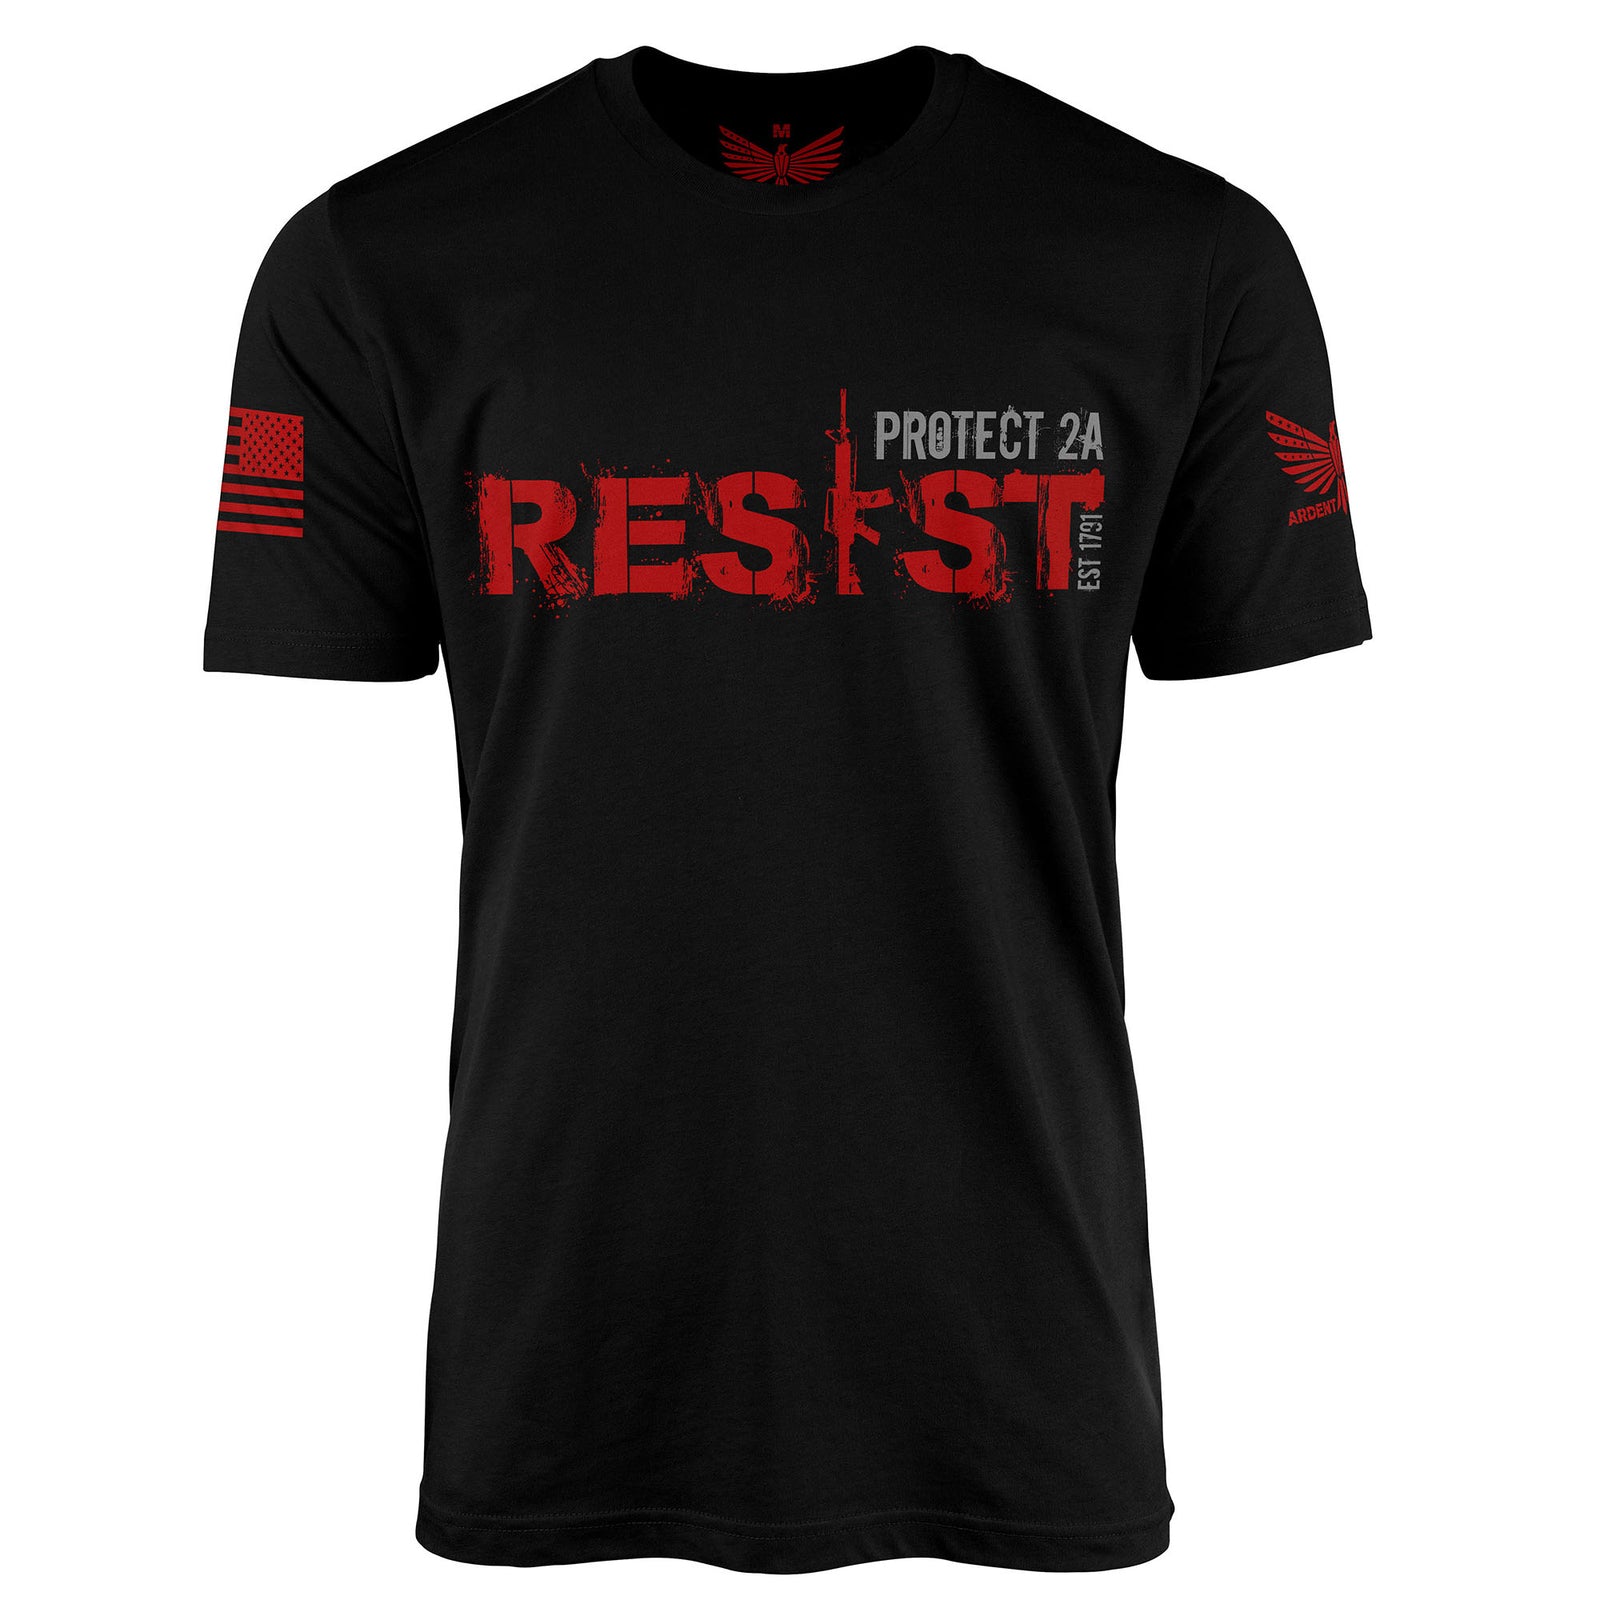 RESIST-Men's Shirt-S-Ardent Patriot Apparel Co.